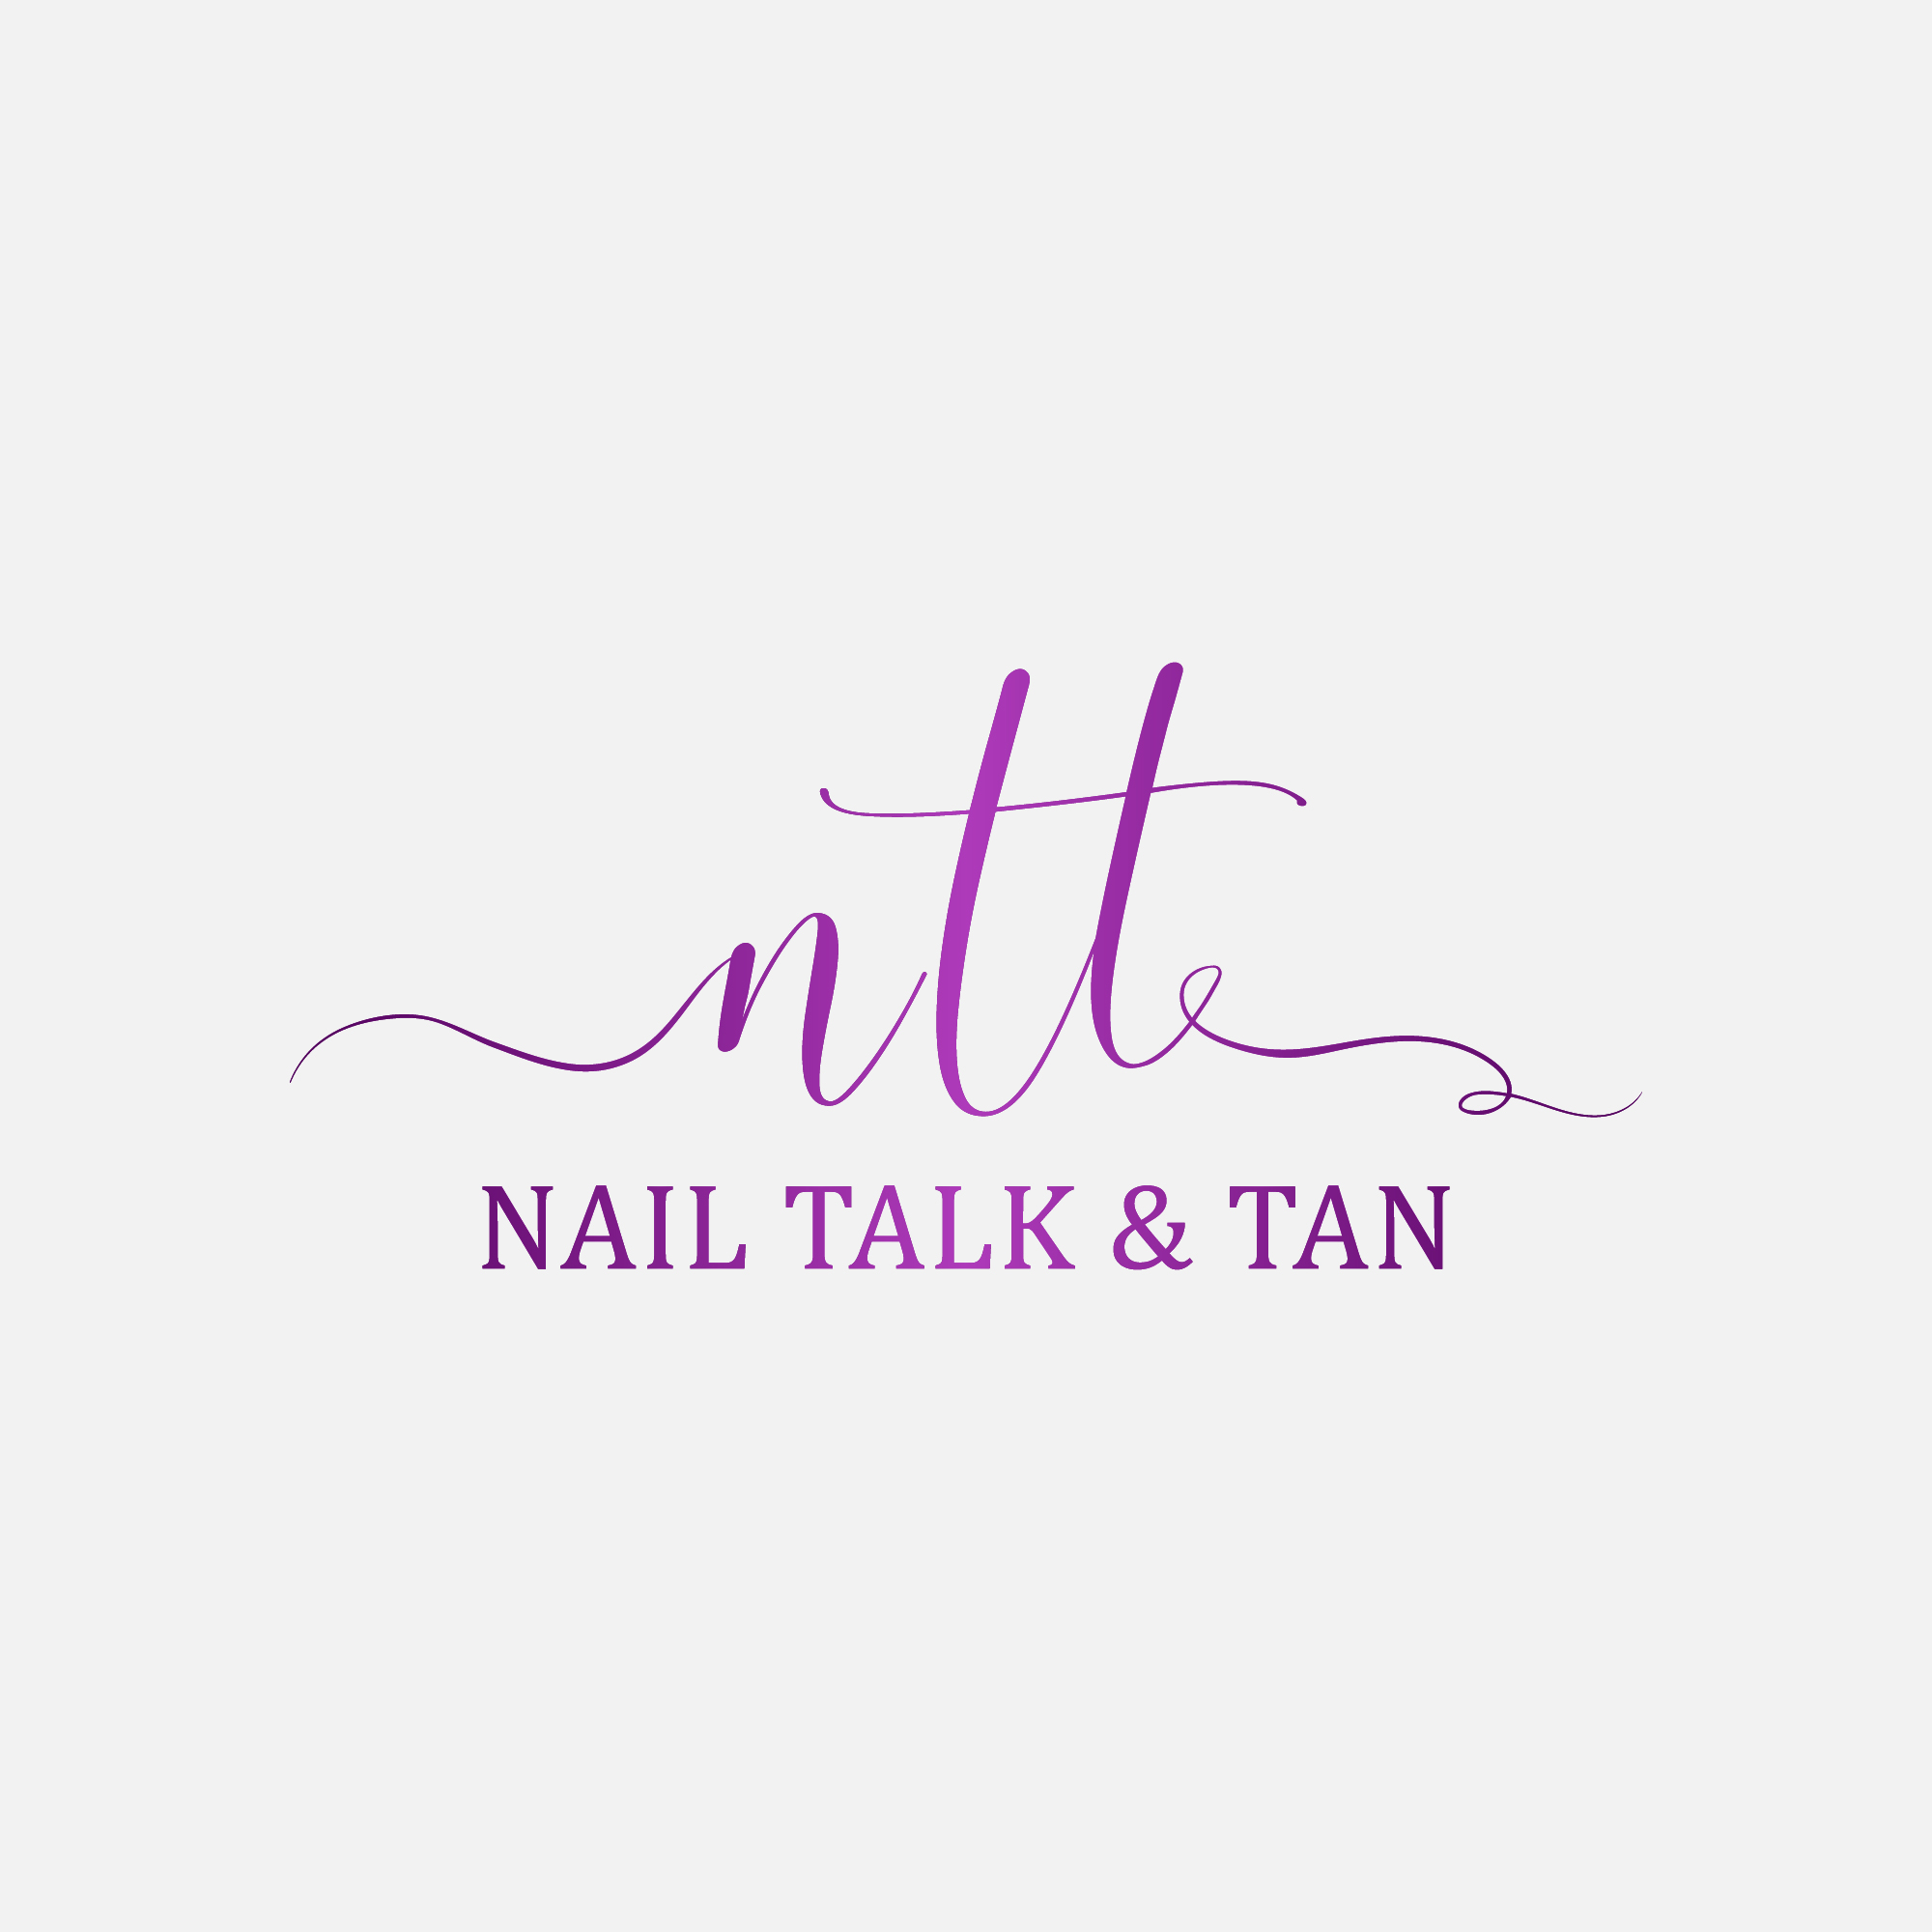 Nail Talk & Tan